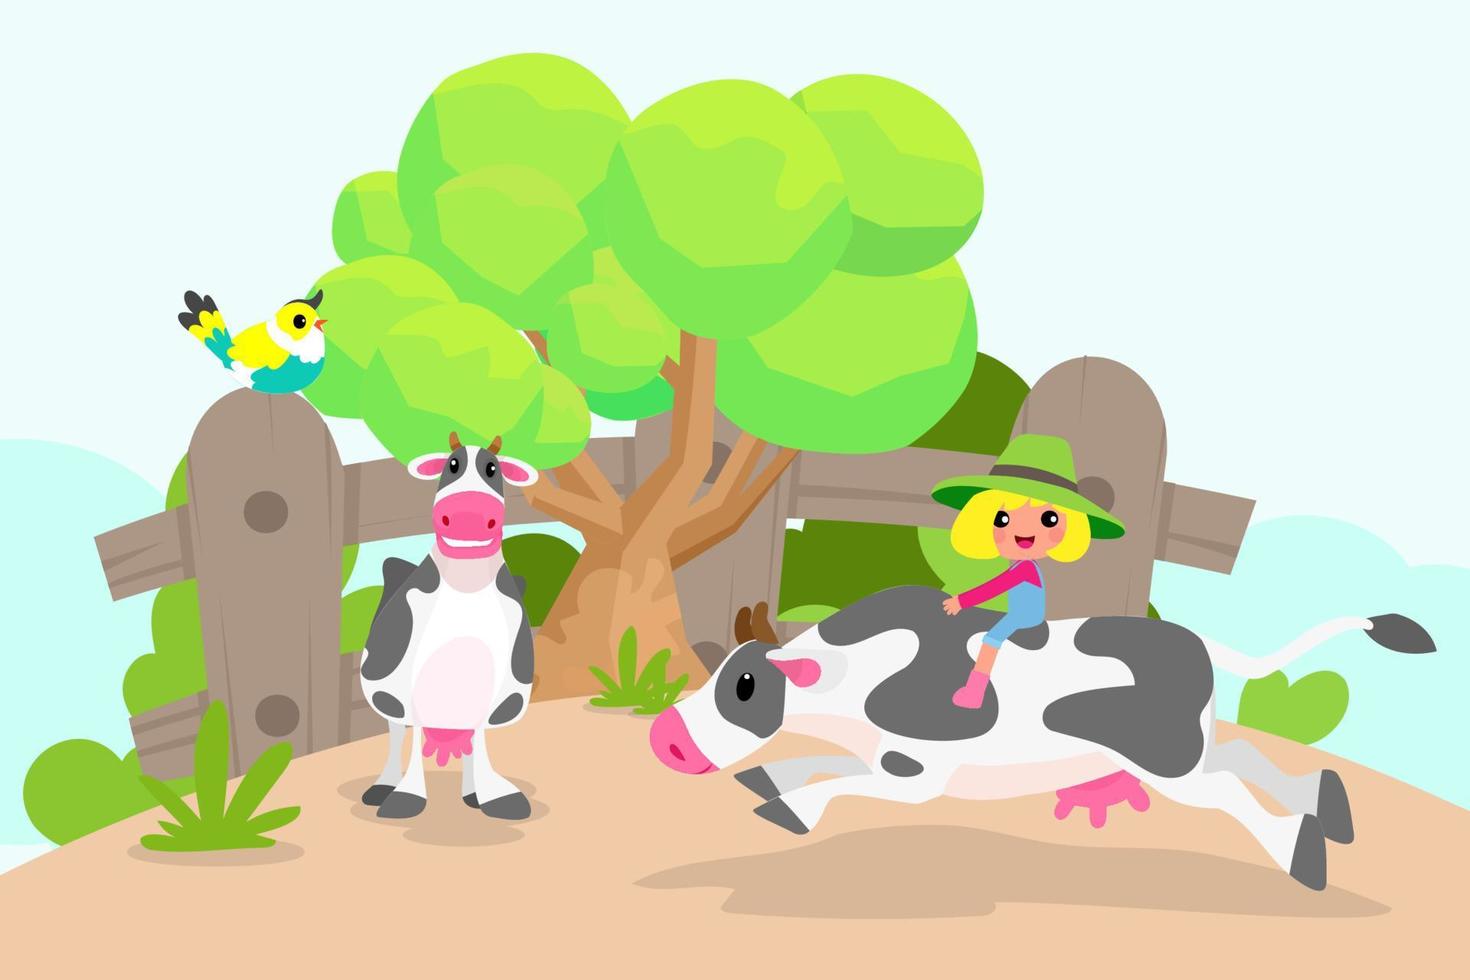 söta djur i ranch, gård och jordbruk. illustrationer av bylivet och objektdesign för banner, layout, årsredovisning, webb, flyer, broschyr, annons. vektor